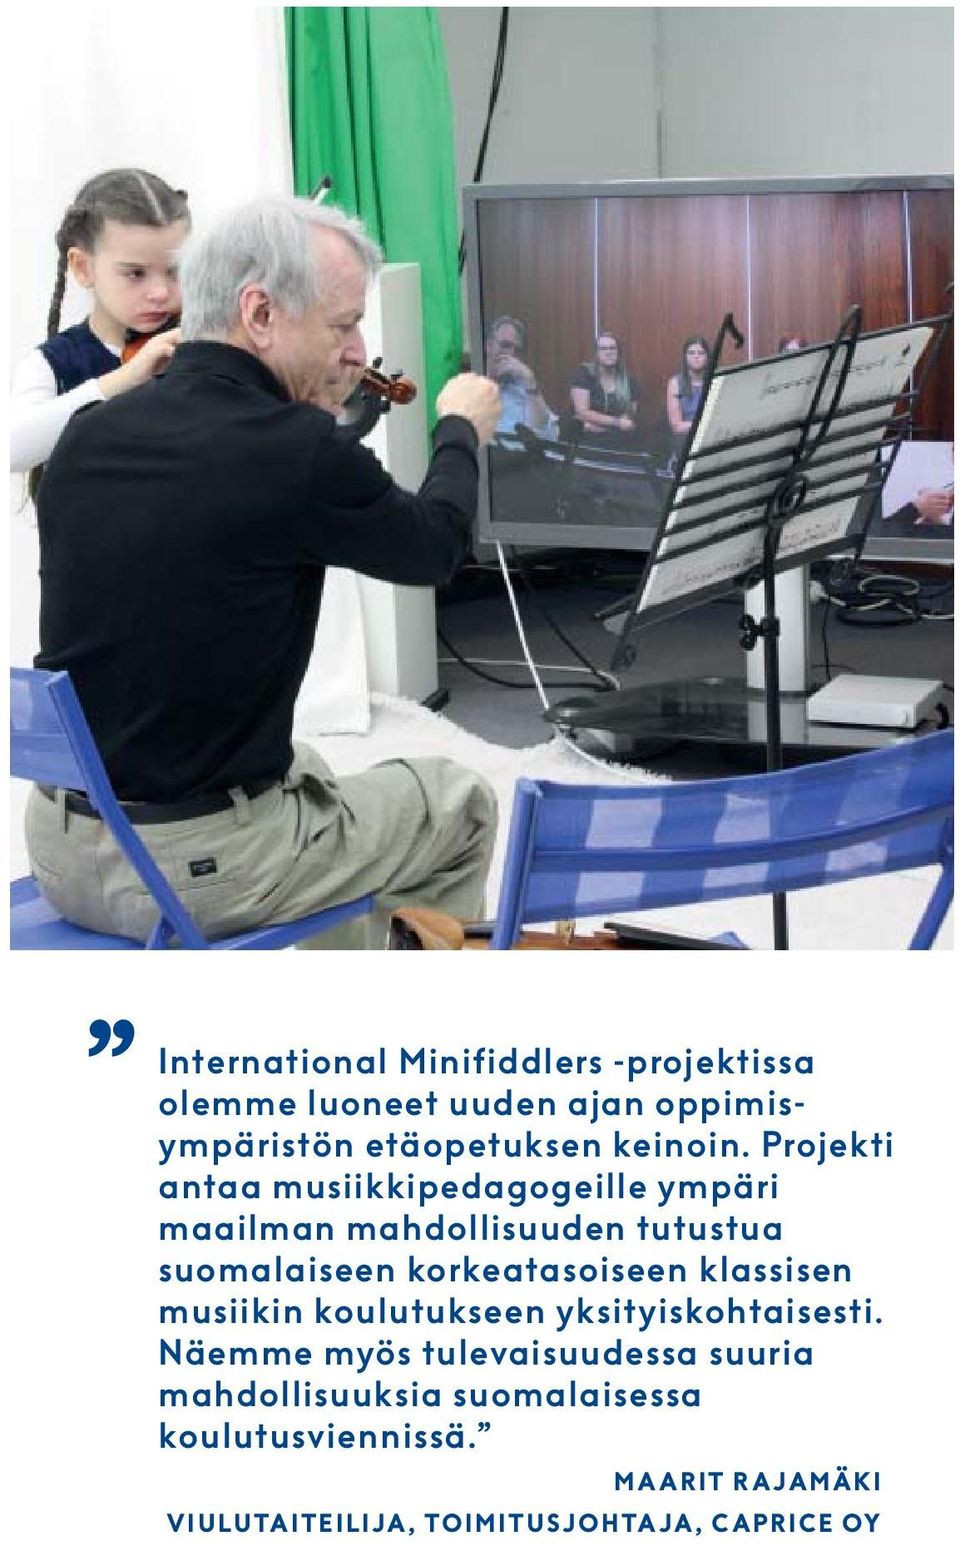 Projekti antaa musiikkipedagogeille ympäri maailman mahdollisuuden tutustua suomalaiseen